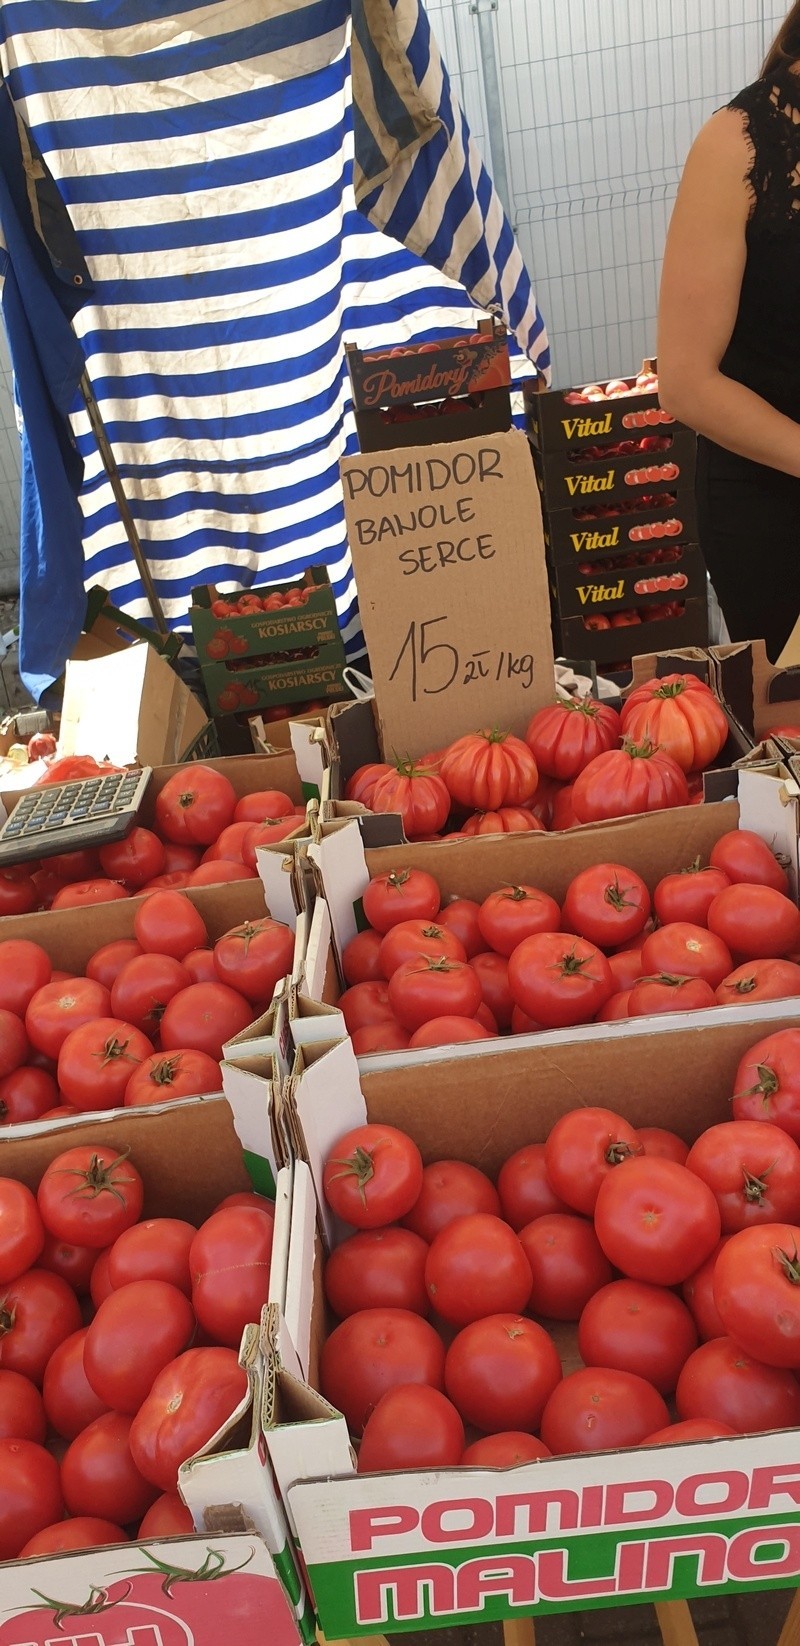 Również niektóre warzywa odstraszają cenami. Pomidor bawole...